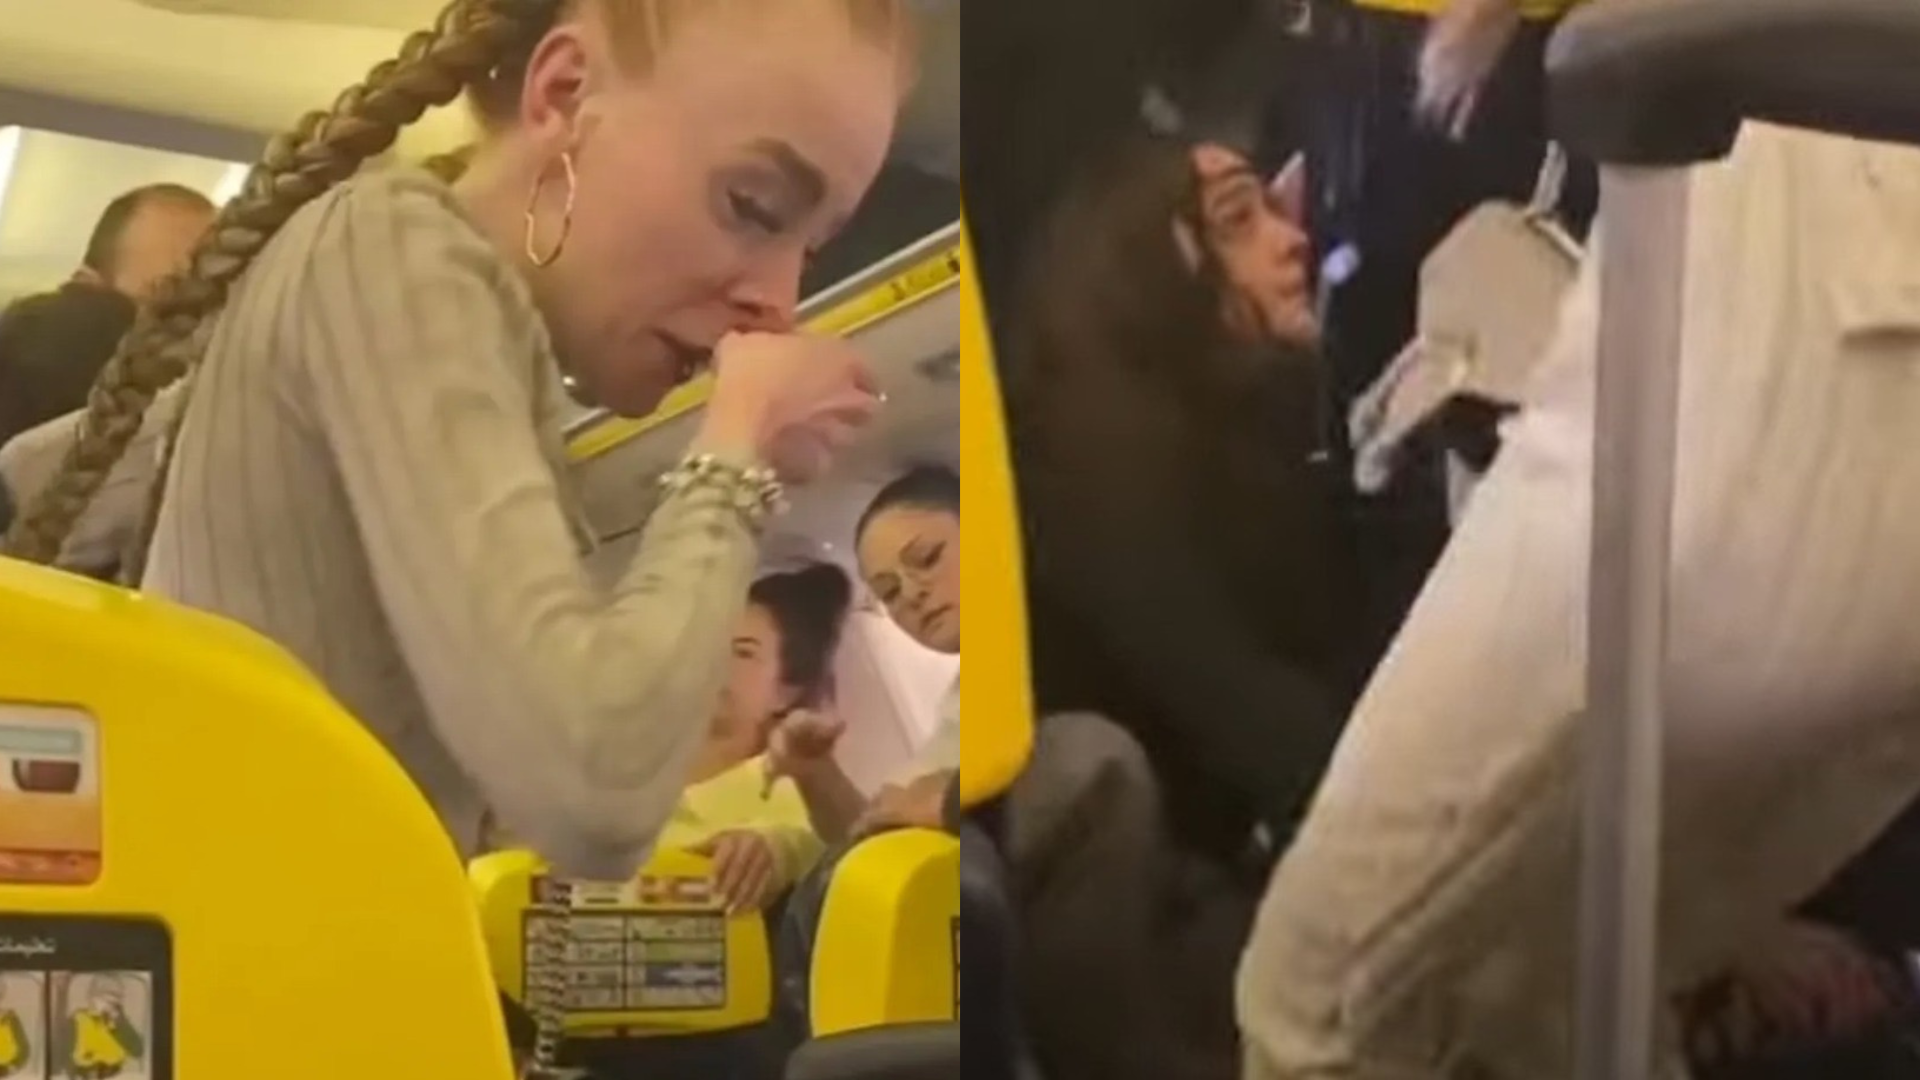 Vídeo: Caos no ar! Passageiras brigam durante voo internacional e uma delas sai com o nariz ensanguentado